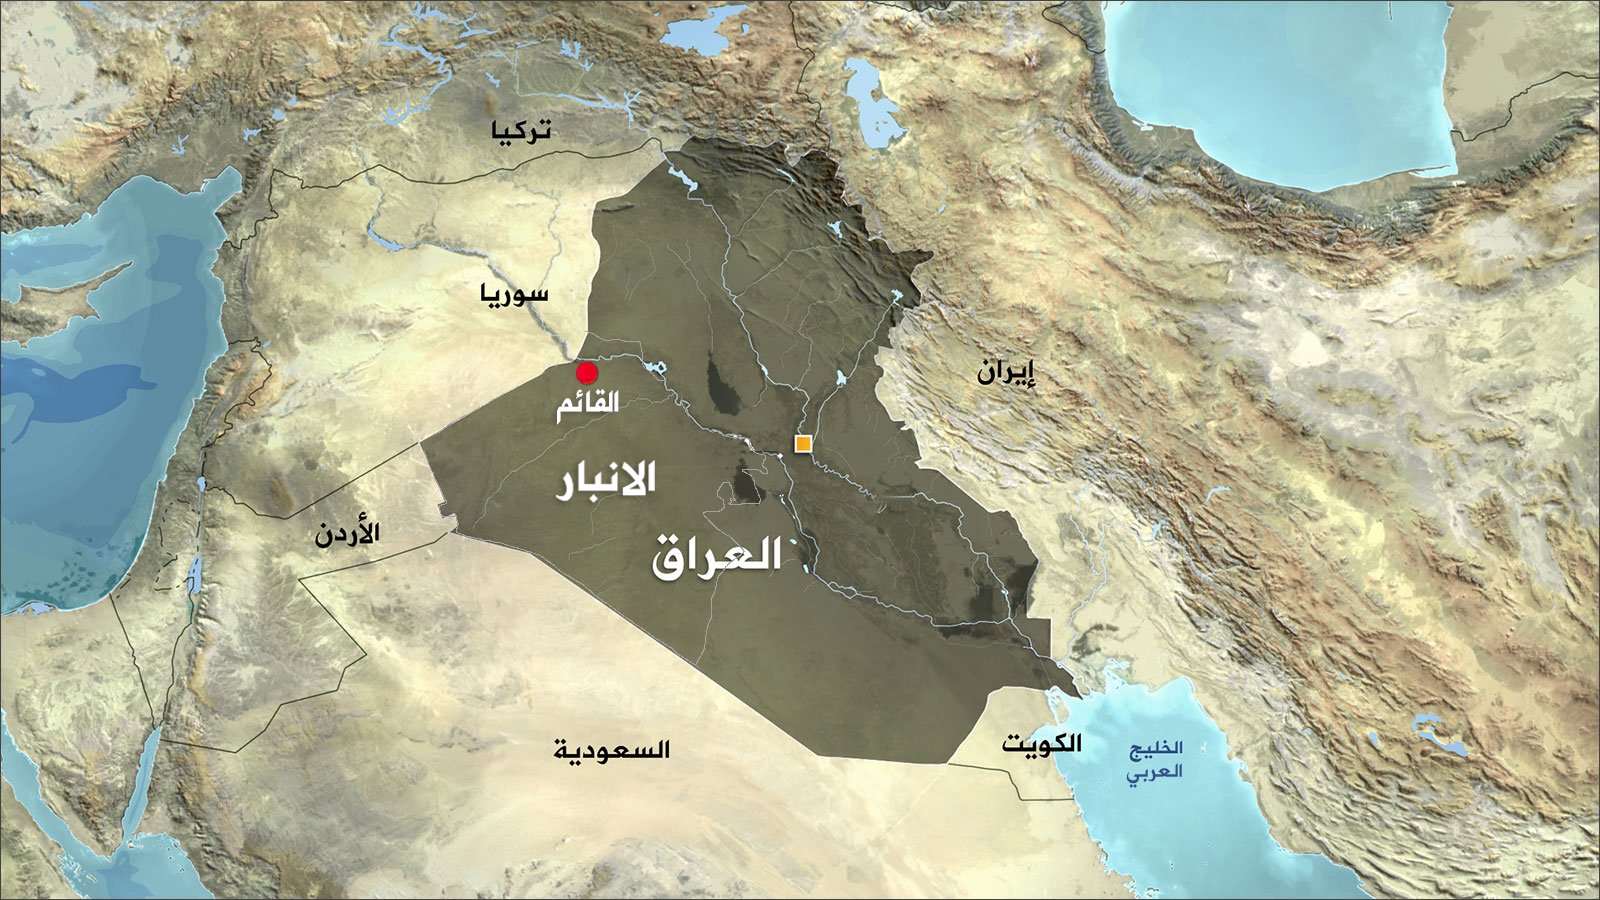 ‪محافظة الأنبار تشكل 31% من مساحة العراق‬ (الجزيرة)